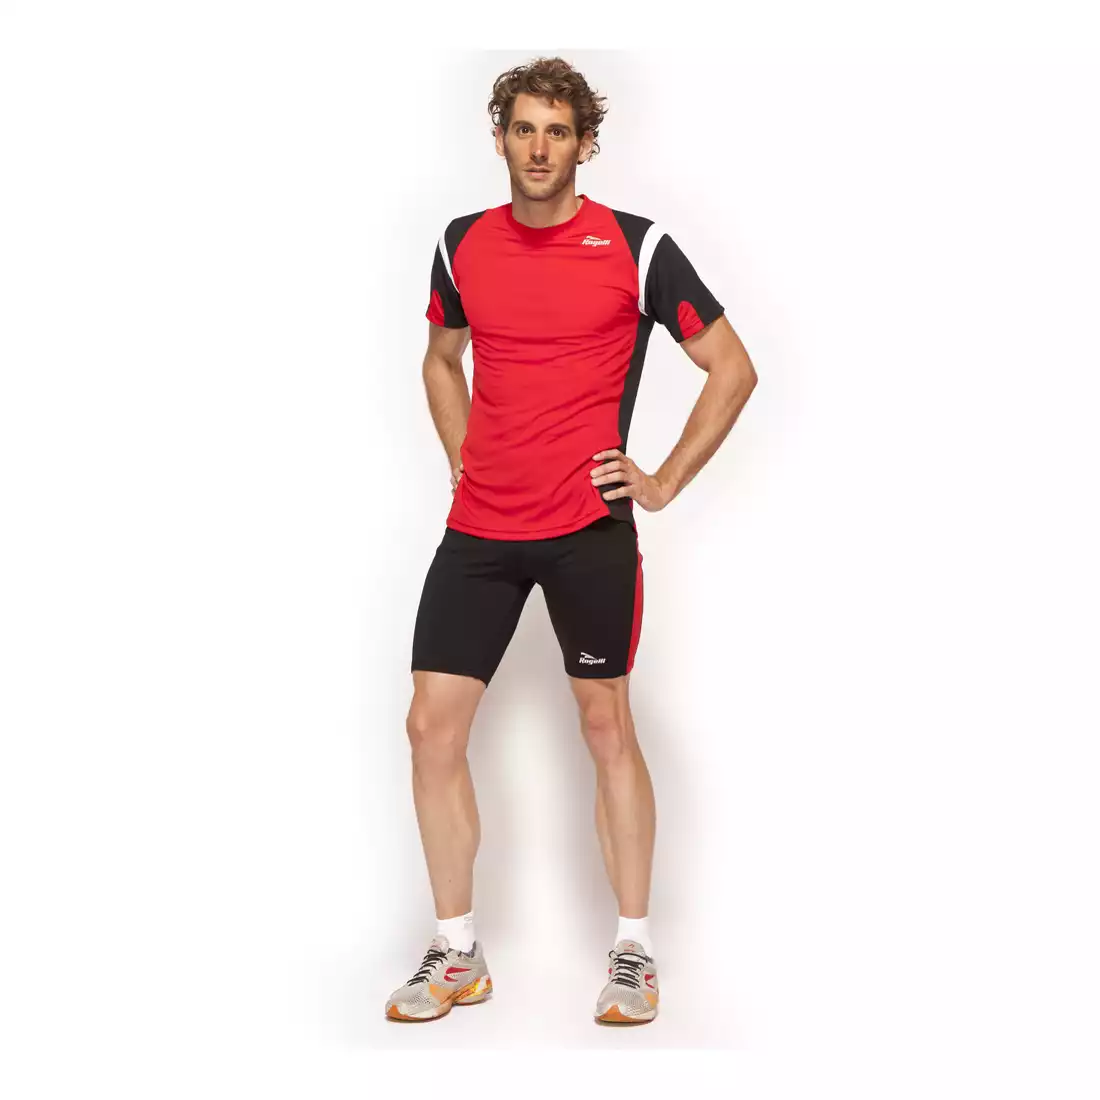 ROGELLI RUN DUTTON - ultralekka męska koszulka sportowa